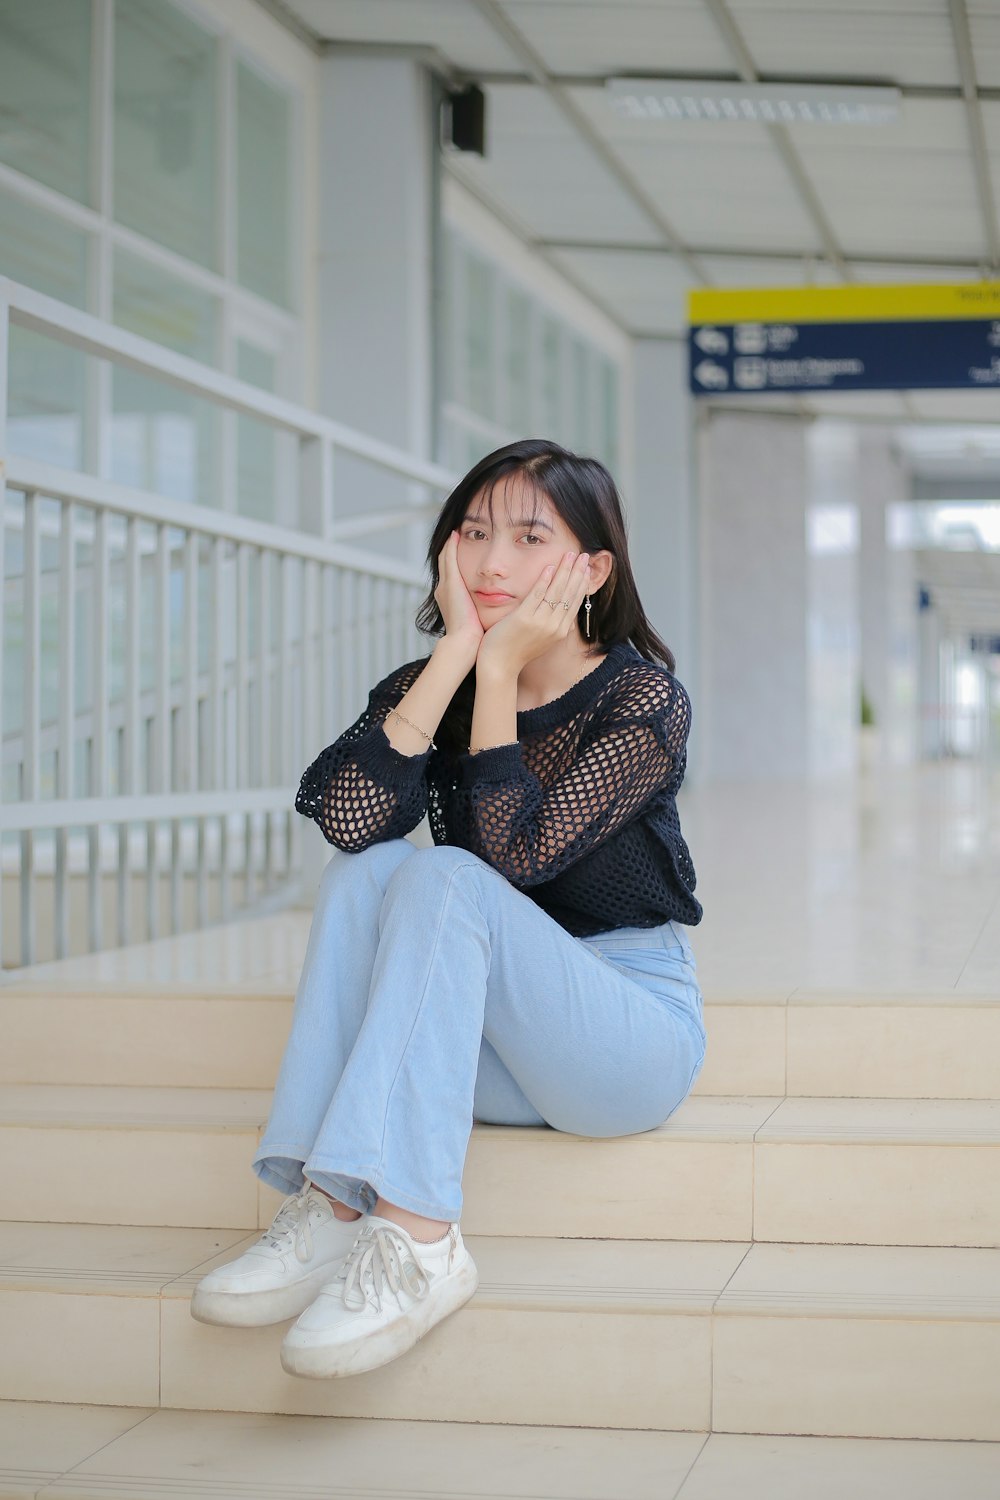 공항 계단에 앉아 있는 여성